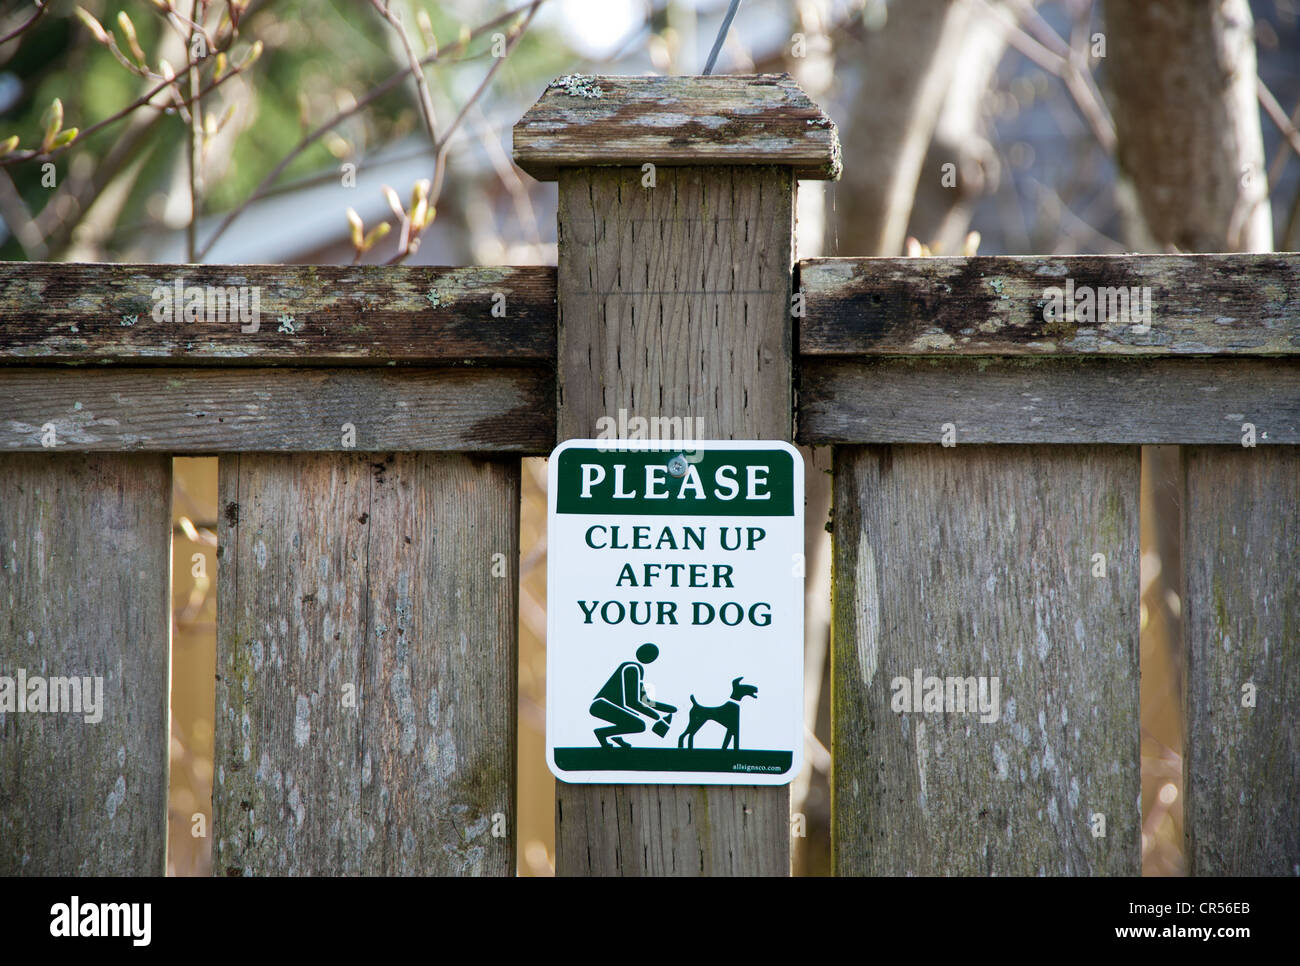 Segno su un fencepost chiedere alla gente di pulizia dopo il loro cane Foto Stock